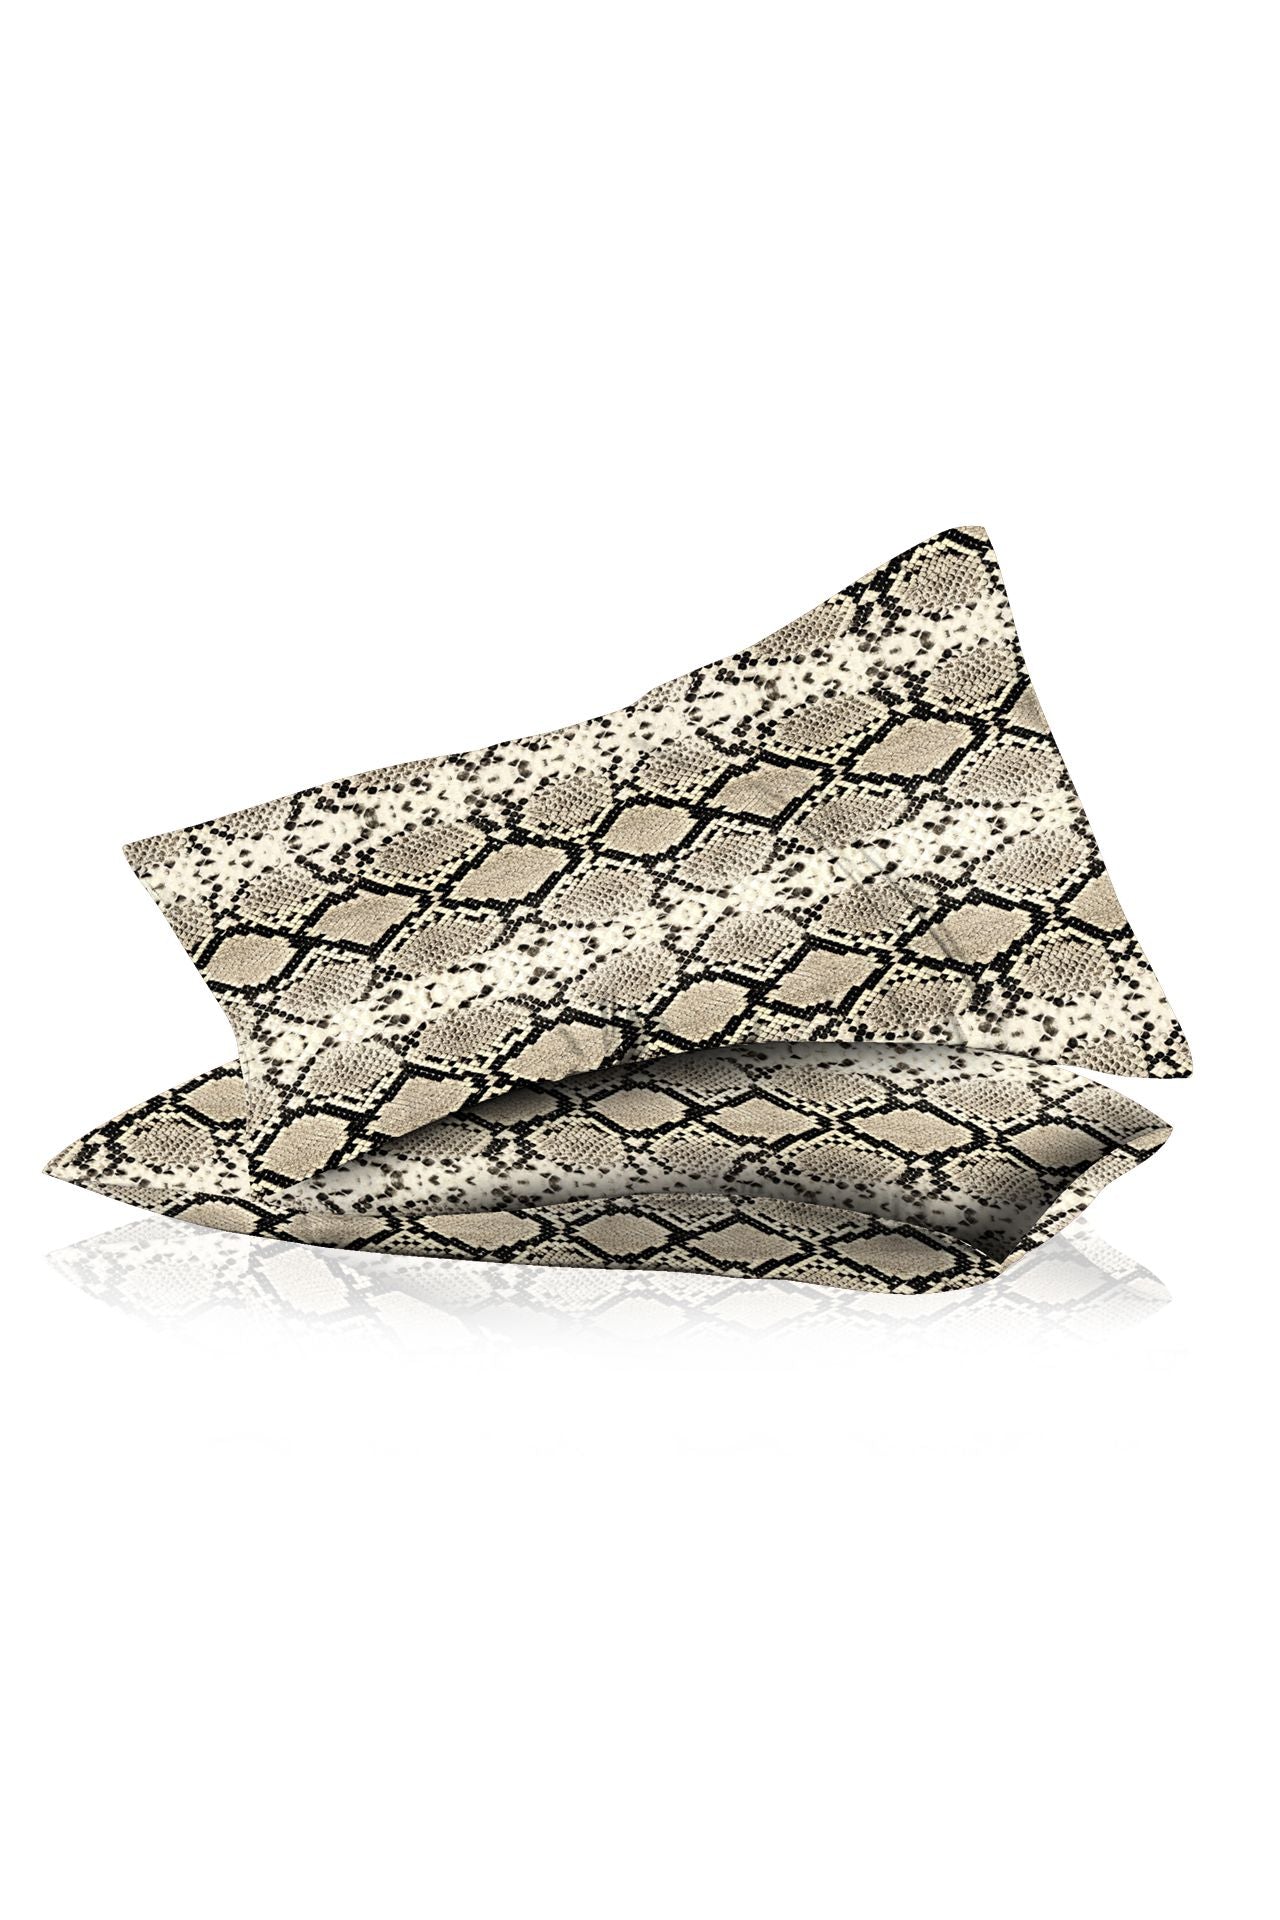 Designer Throw Pillows Cover in Snakeskin